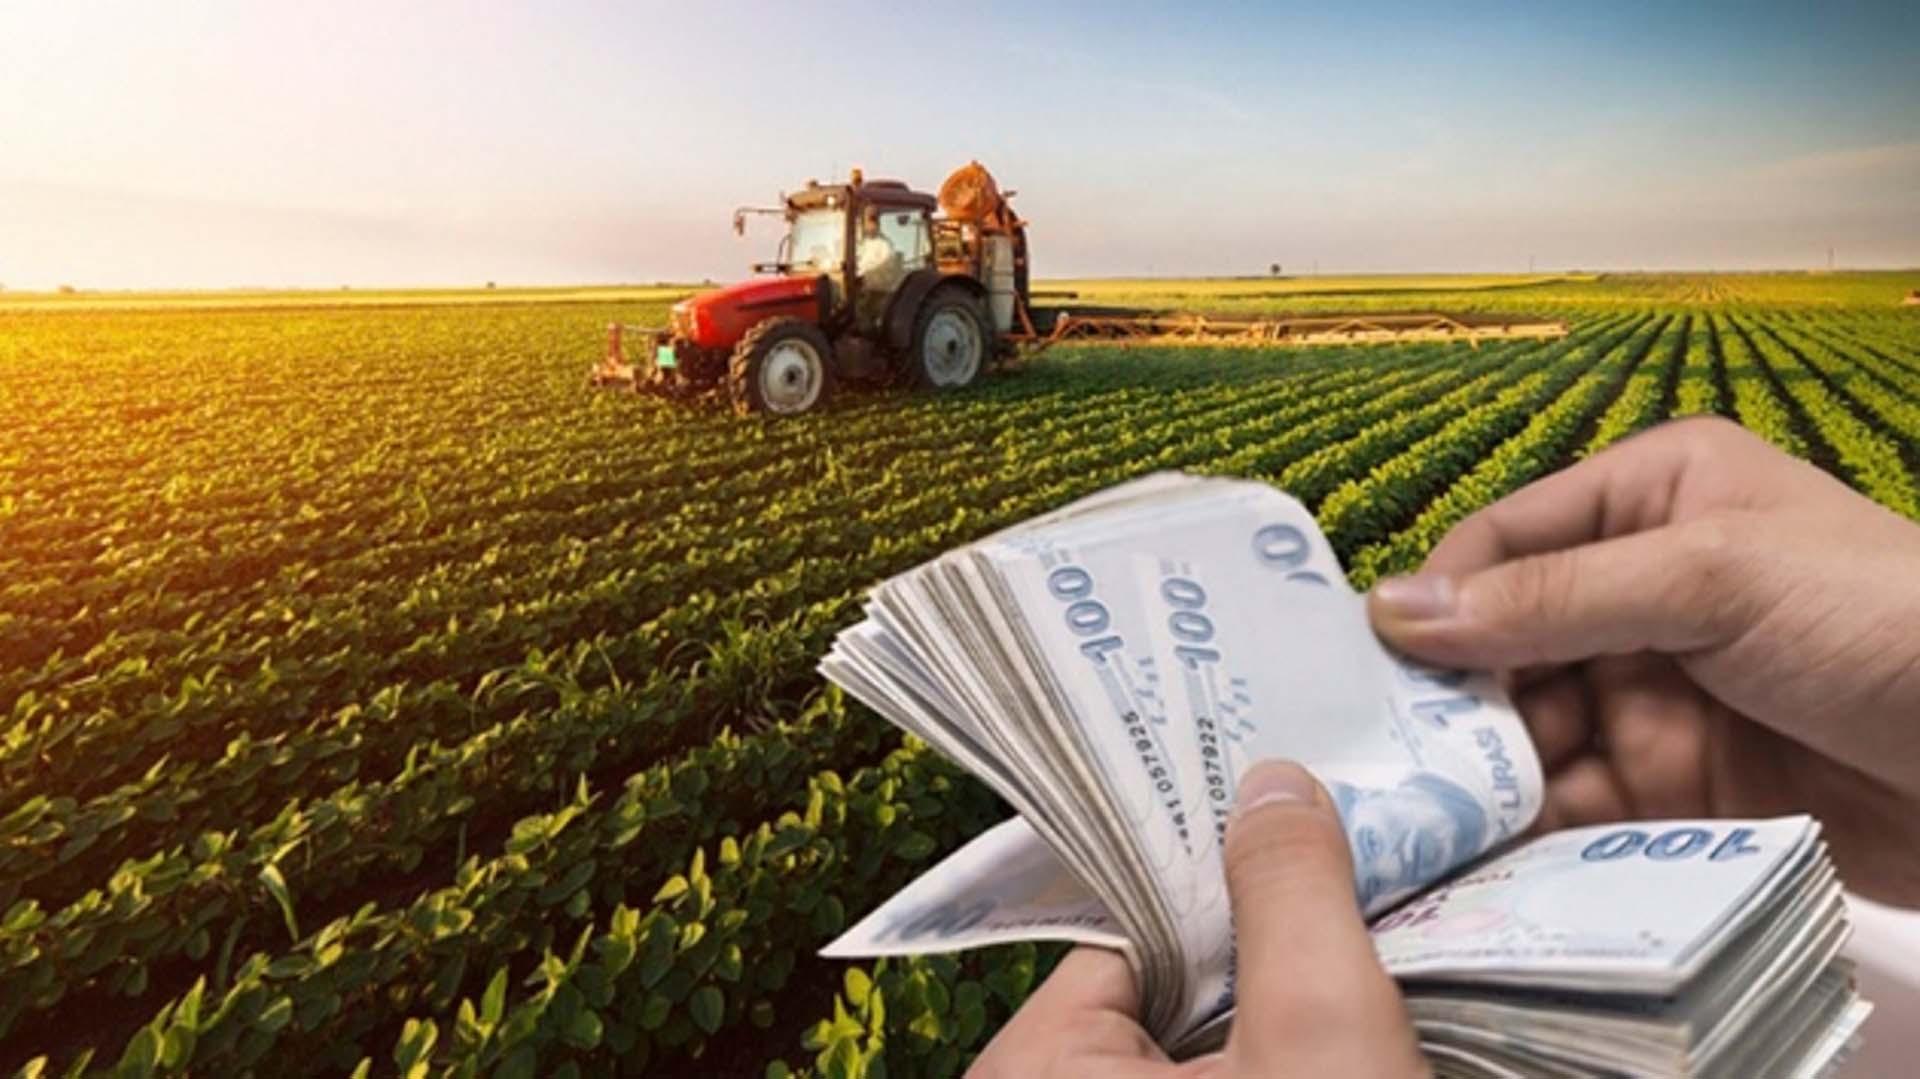 Tarım ve Orman Bakanı Vahit Kirişçi'den tarımsal destek müjdesi! 3 milyar 176 milyon 677 bin 292 TL’lik ödemeler bugün başlıyor